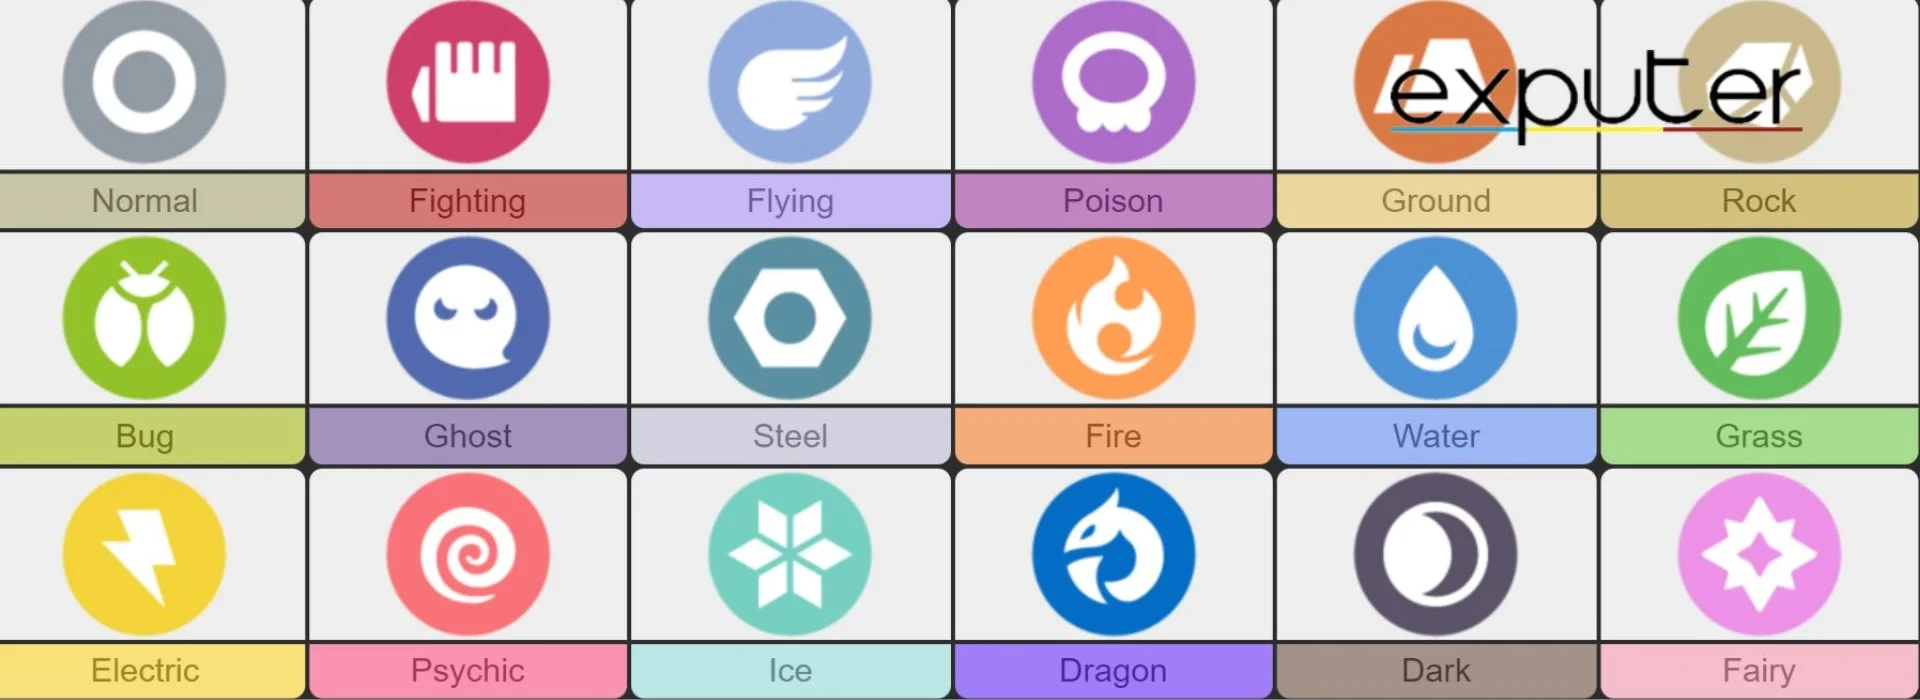 Pokemon Types Diagram